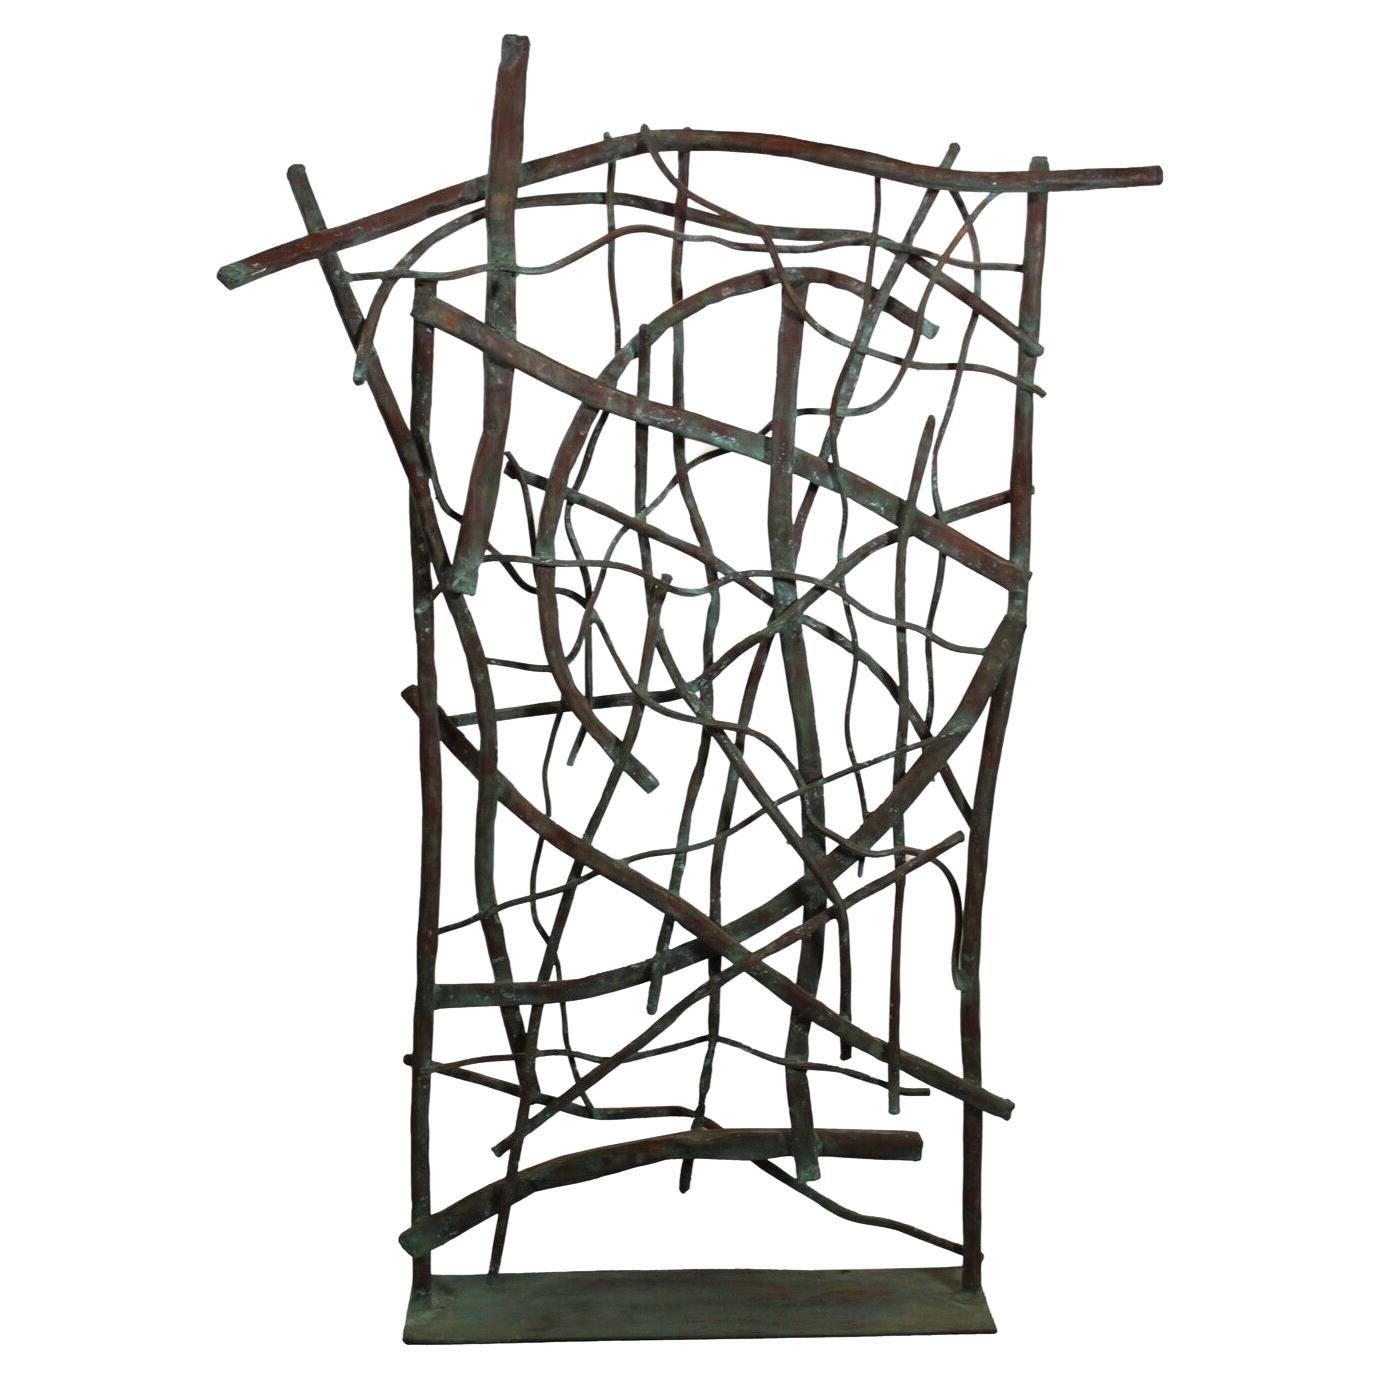 Sculpture abstraite en métal cuivré moderne contemporaine et contemporaine de Robert Hansen